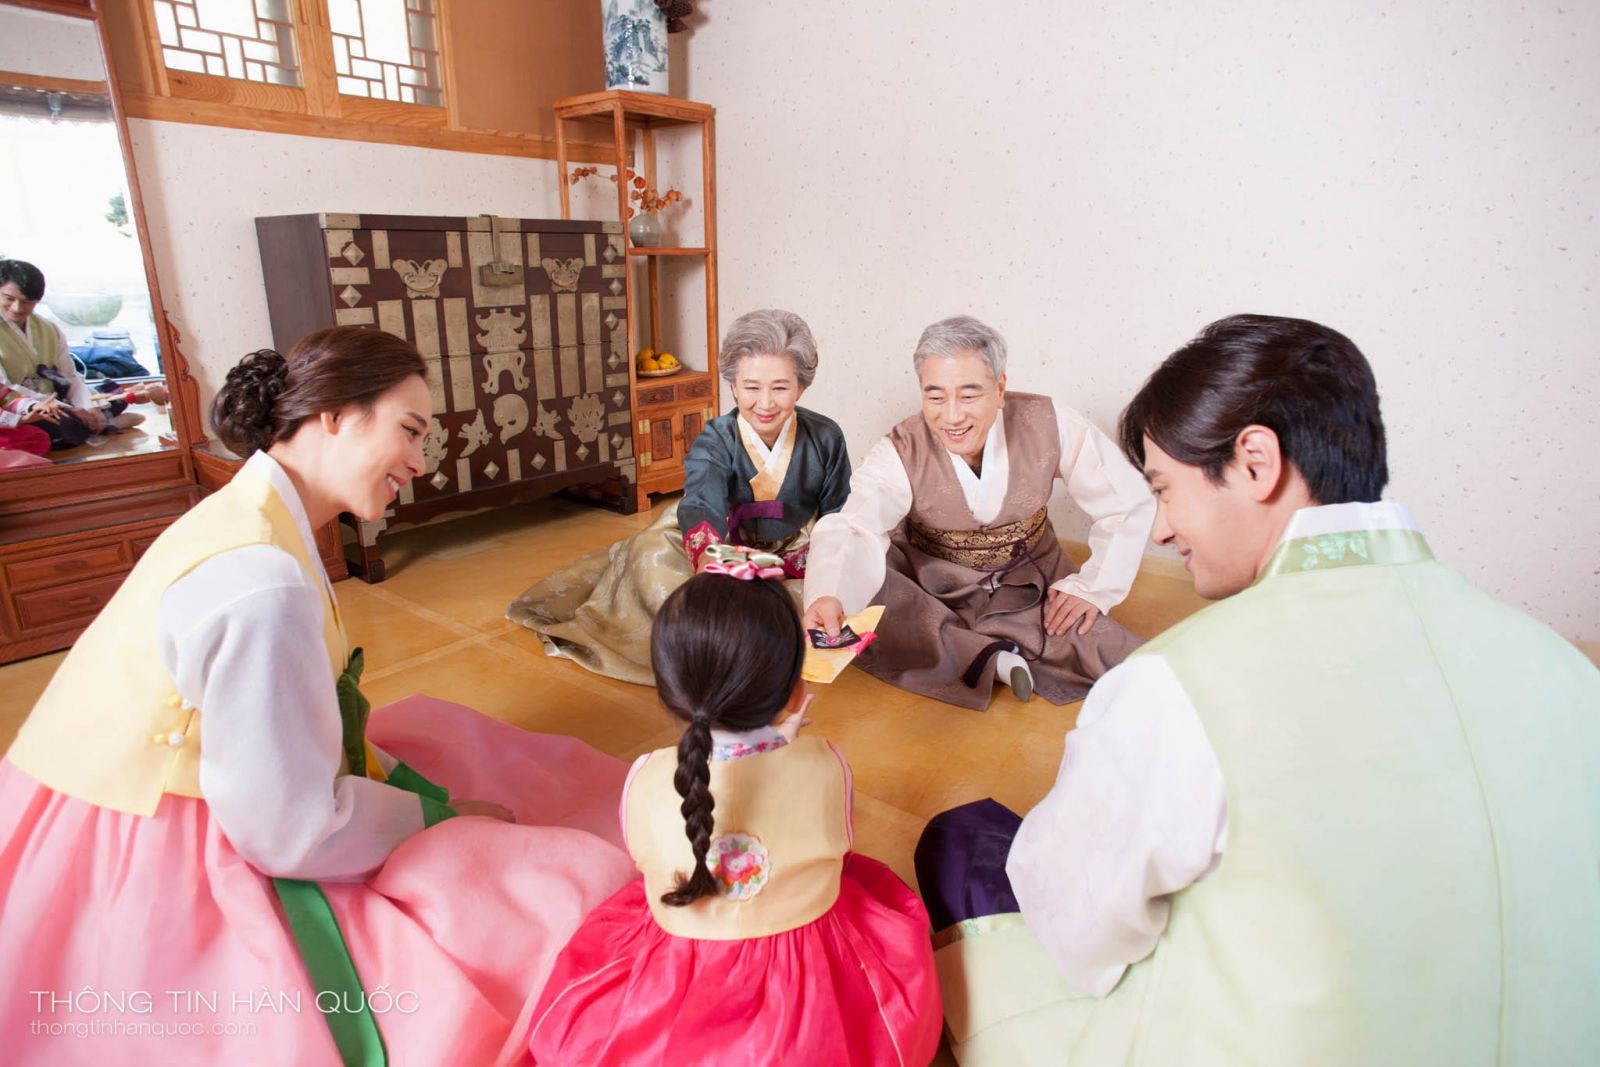 Người dân Hàn Quốc thường mặc trang phục truyền thống (được gọi là hanbok) vào dịp Tết